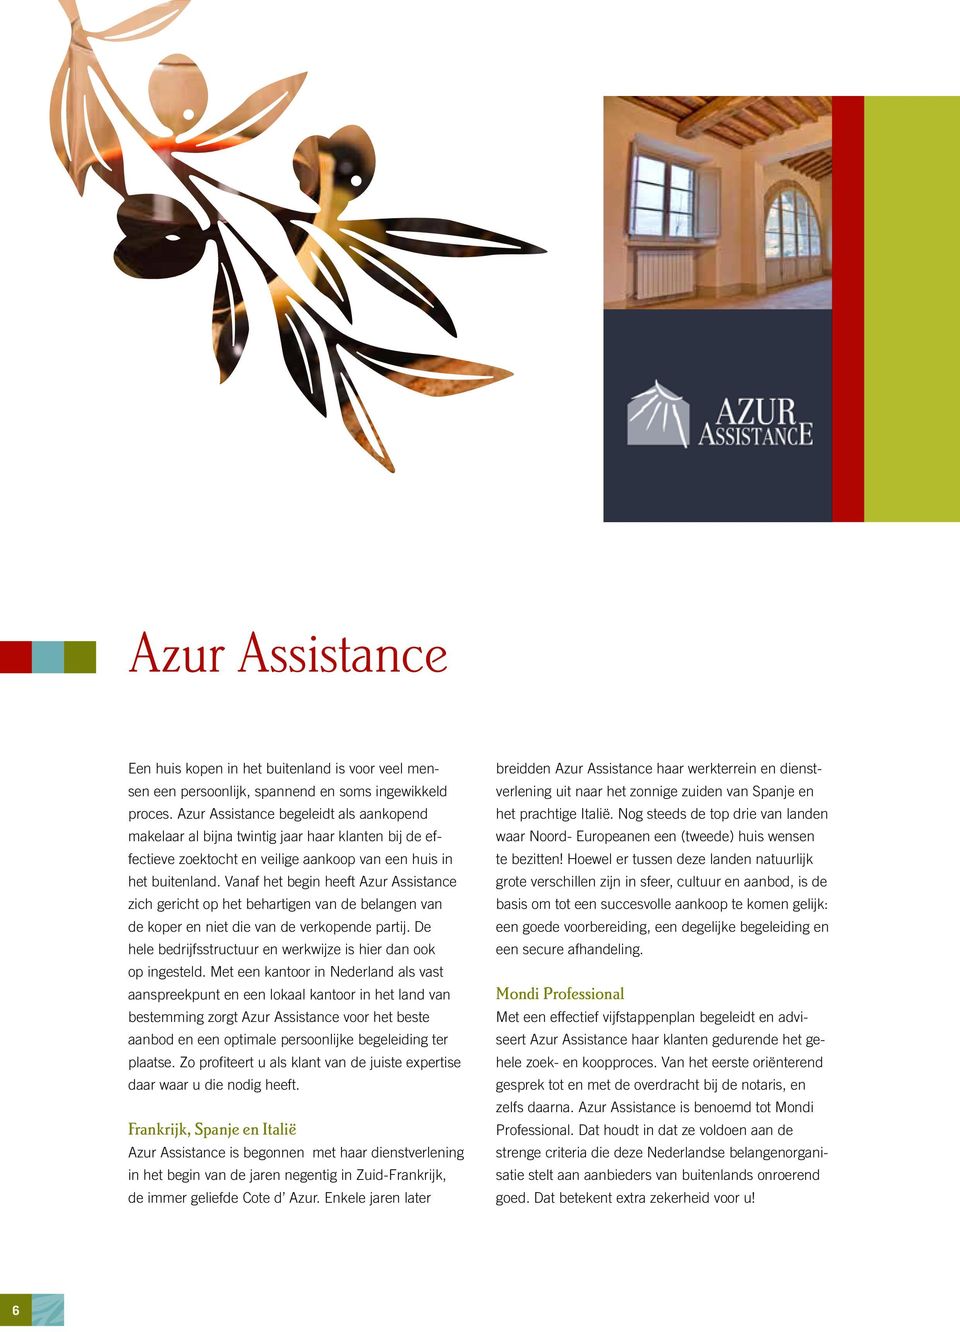 Vanaf het begin heeft Azur Assistance zich gericht op het behartigen van de belangen van de koper en niet die van de verkopende partij.